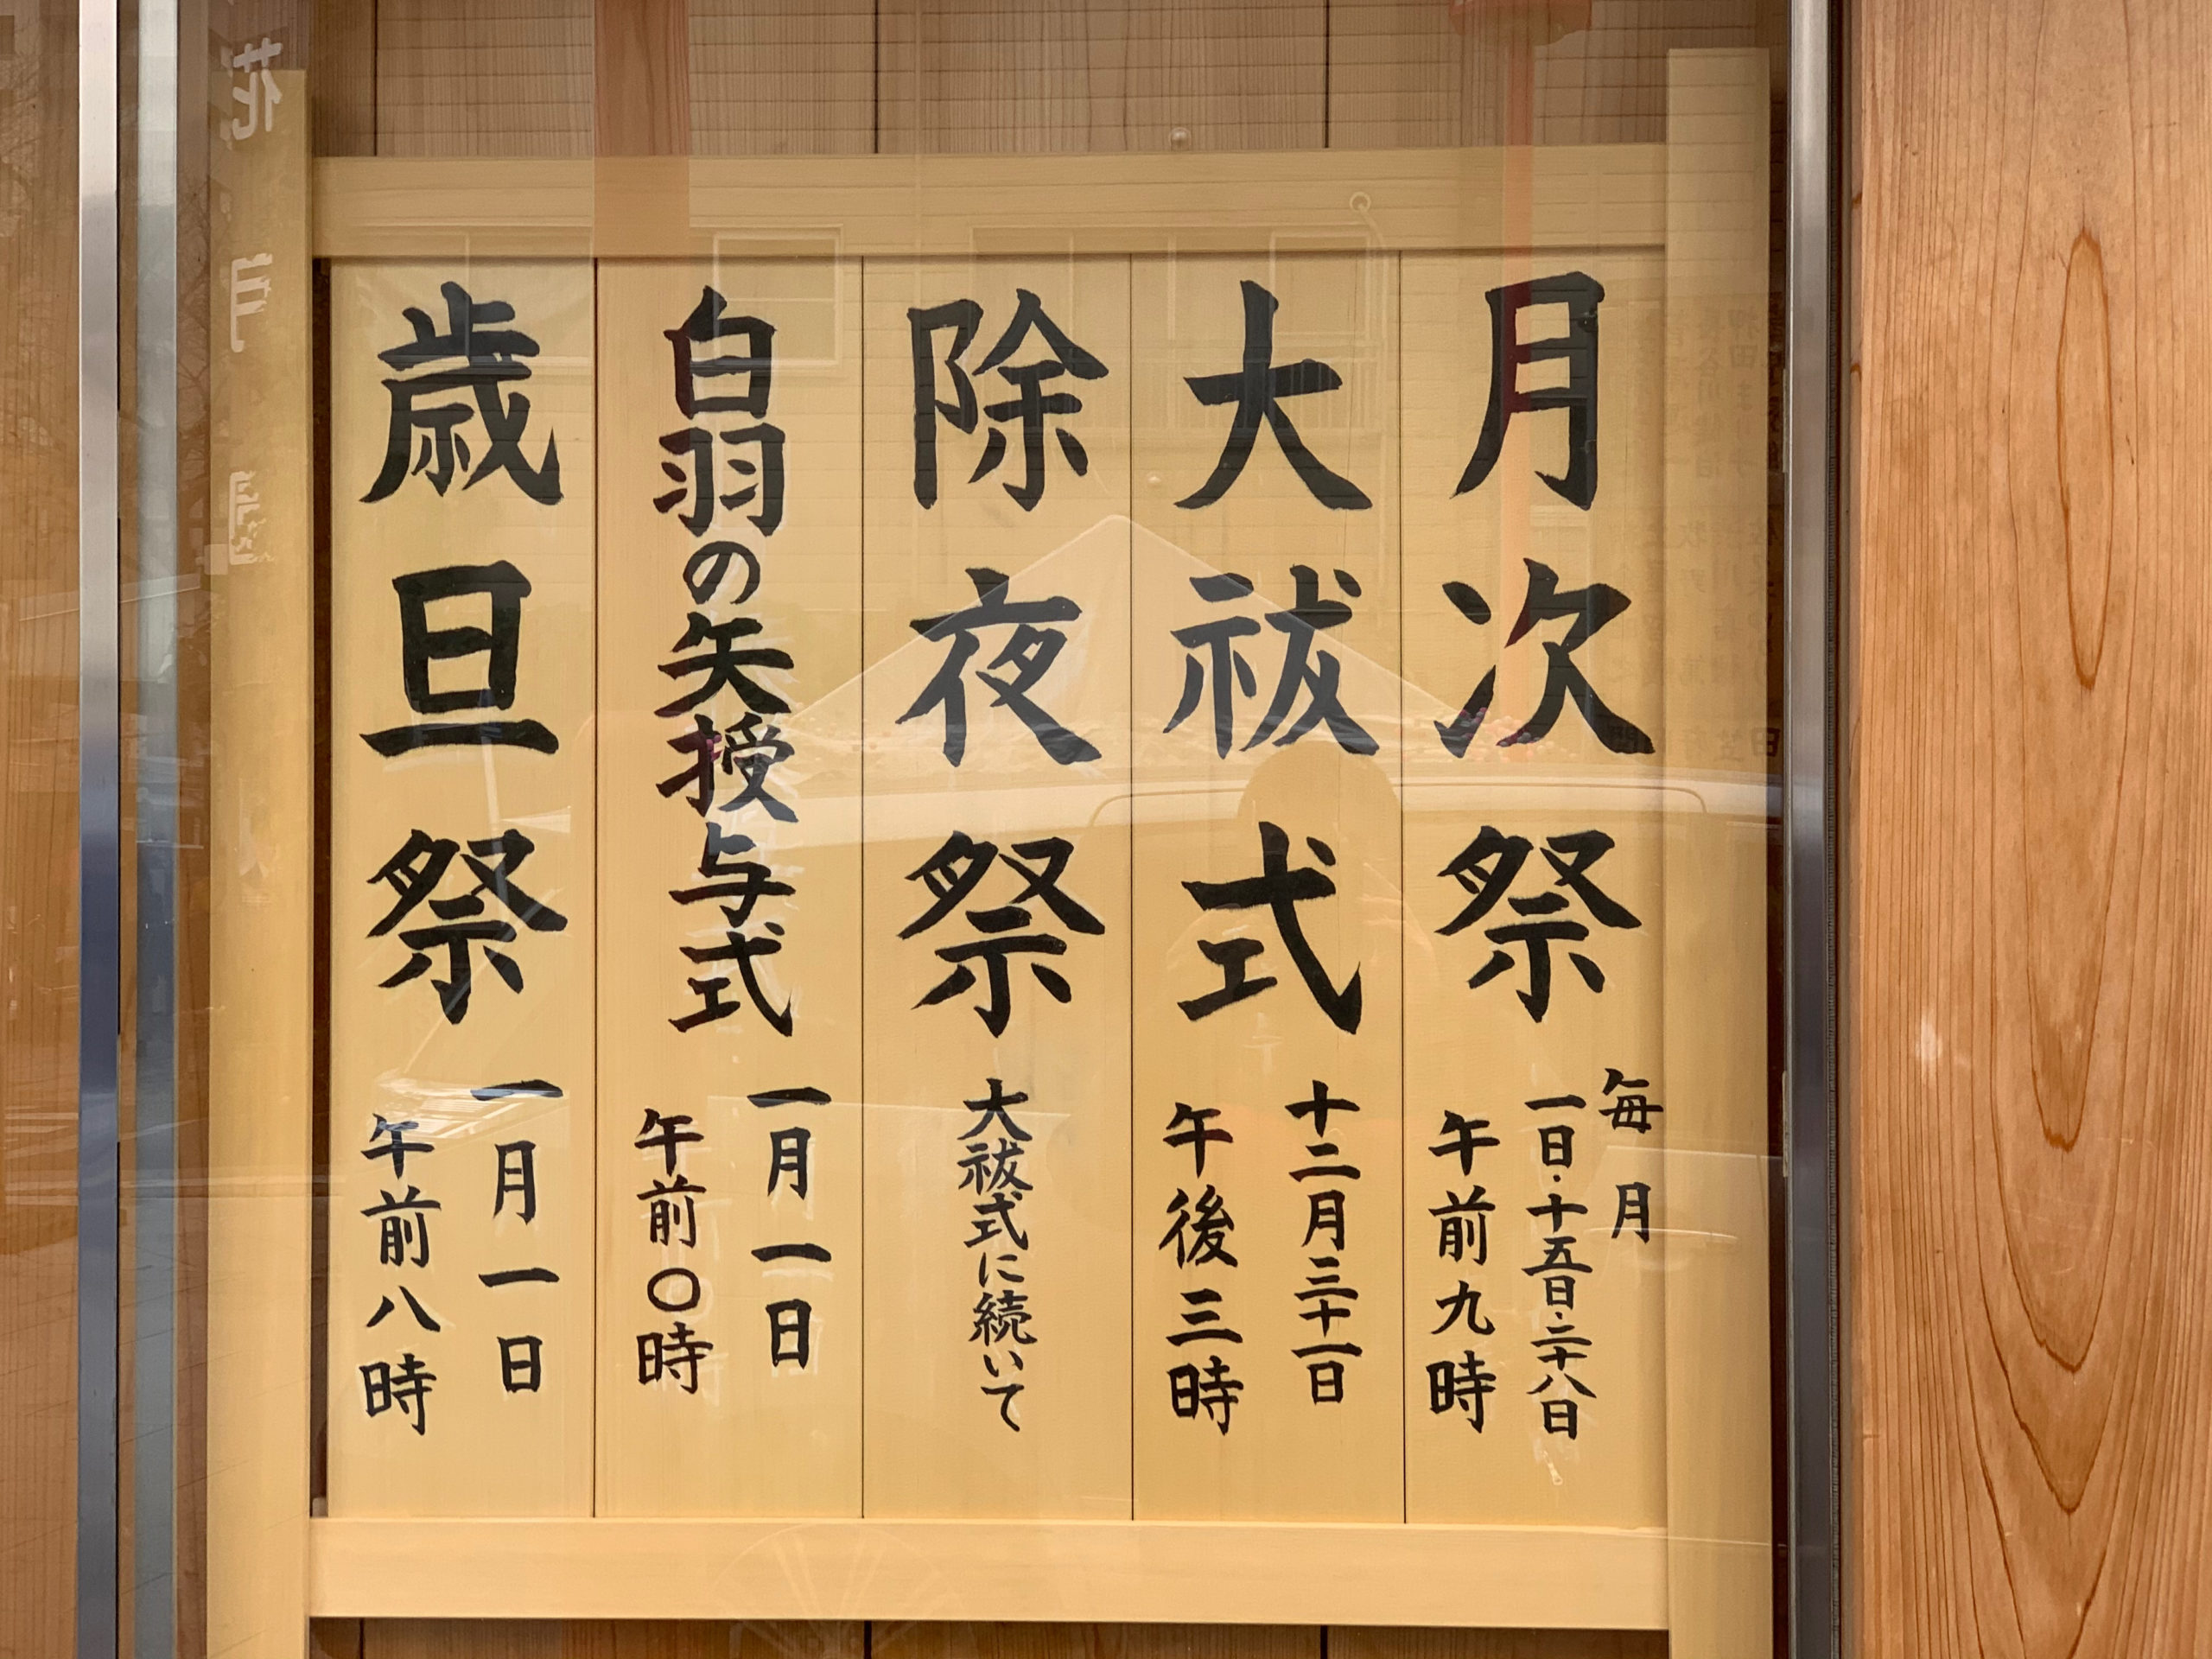 年末の富岡八幡宮での神事として、御神札や形代を納める習慣があります